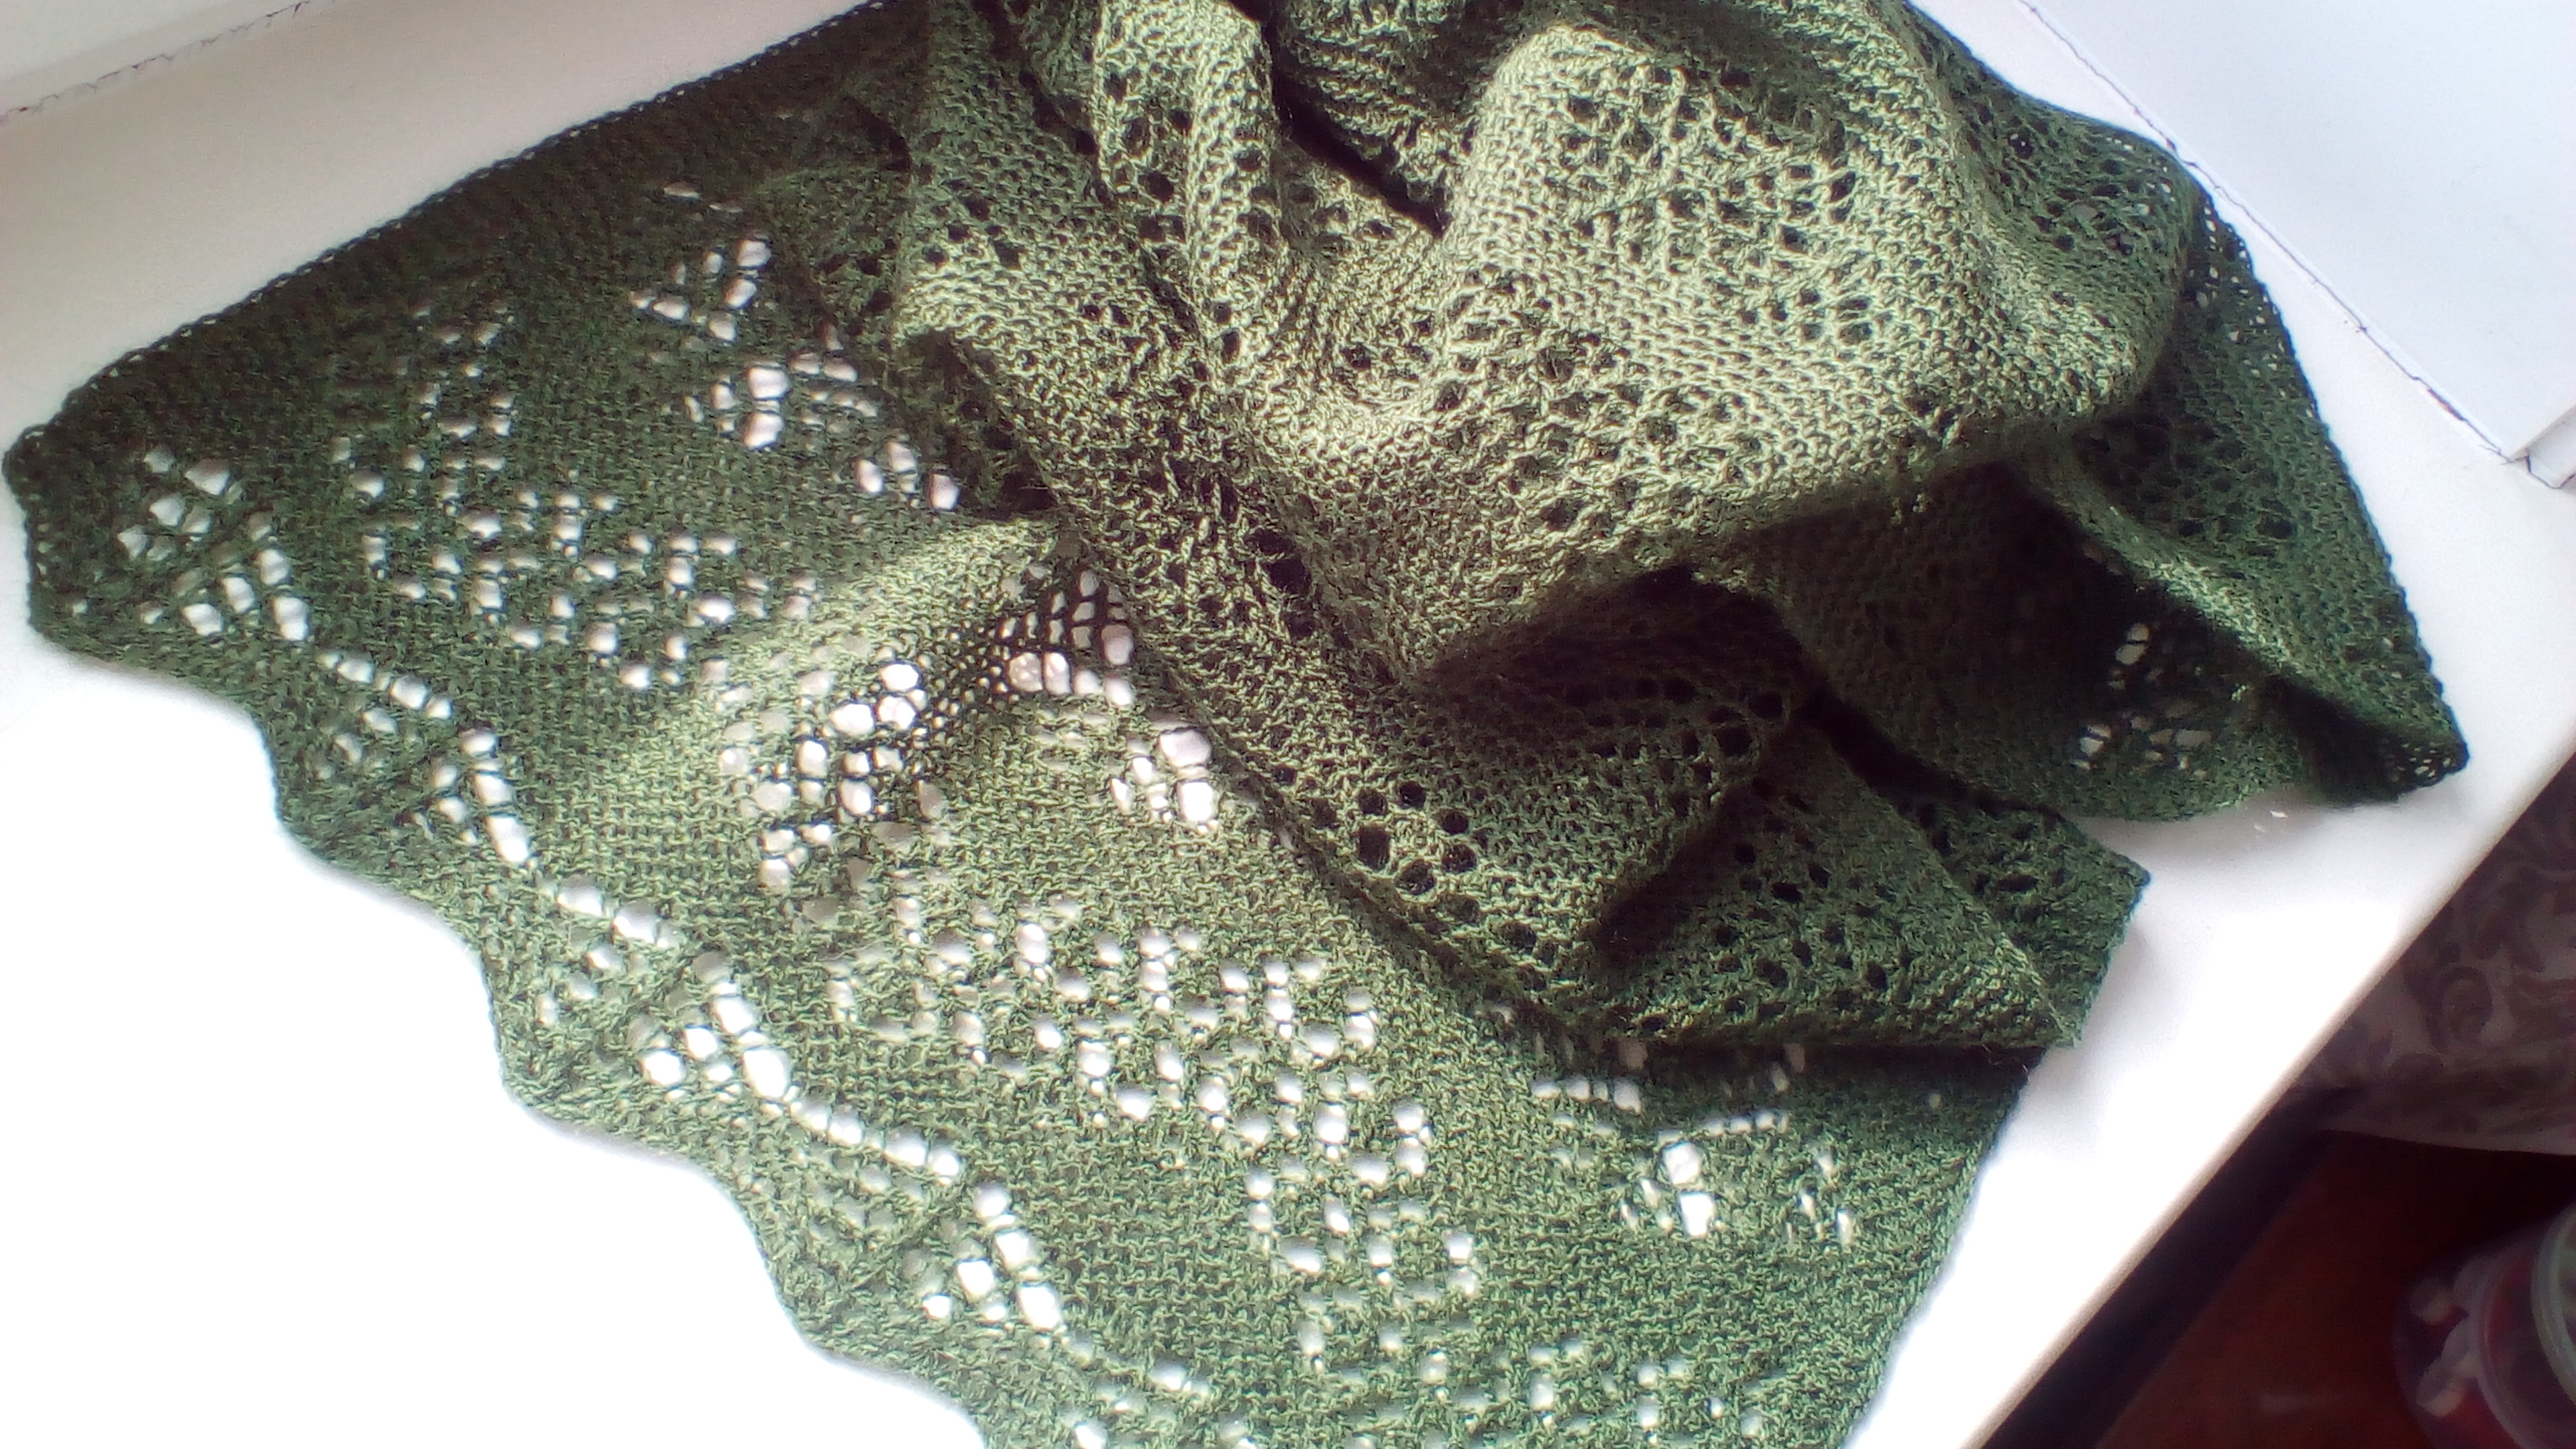 Красивые и модные узоры для вязания спицами разных шарфов